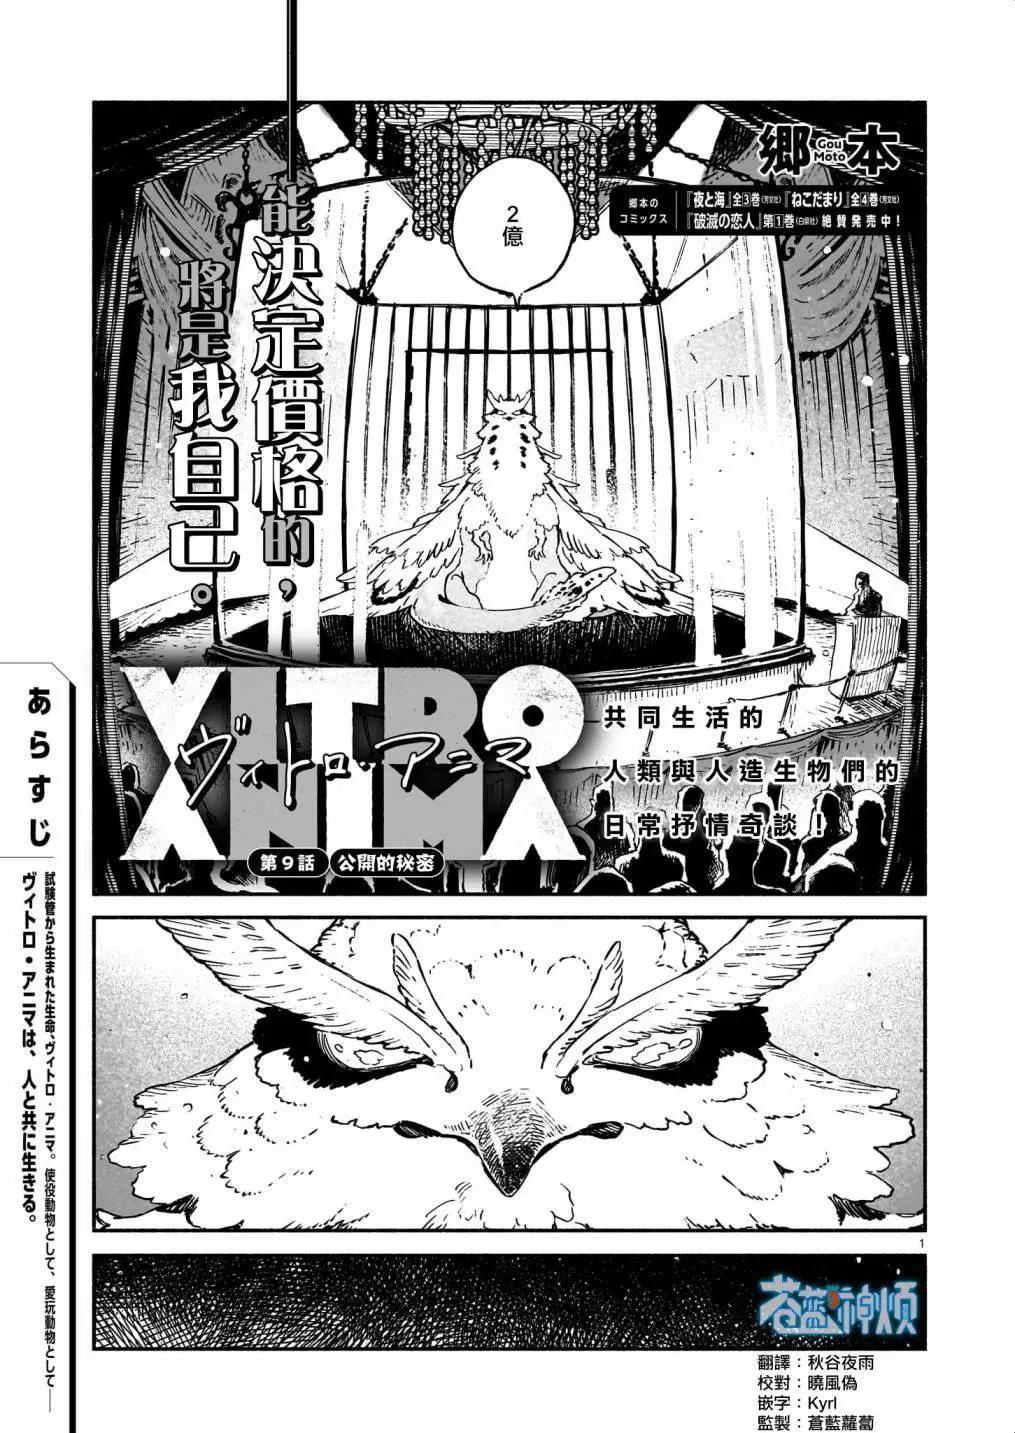 Vitro Anima - 第09话 - 1